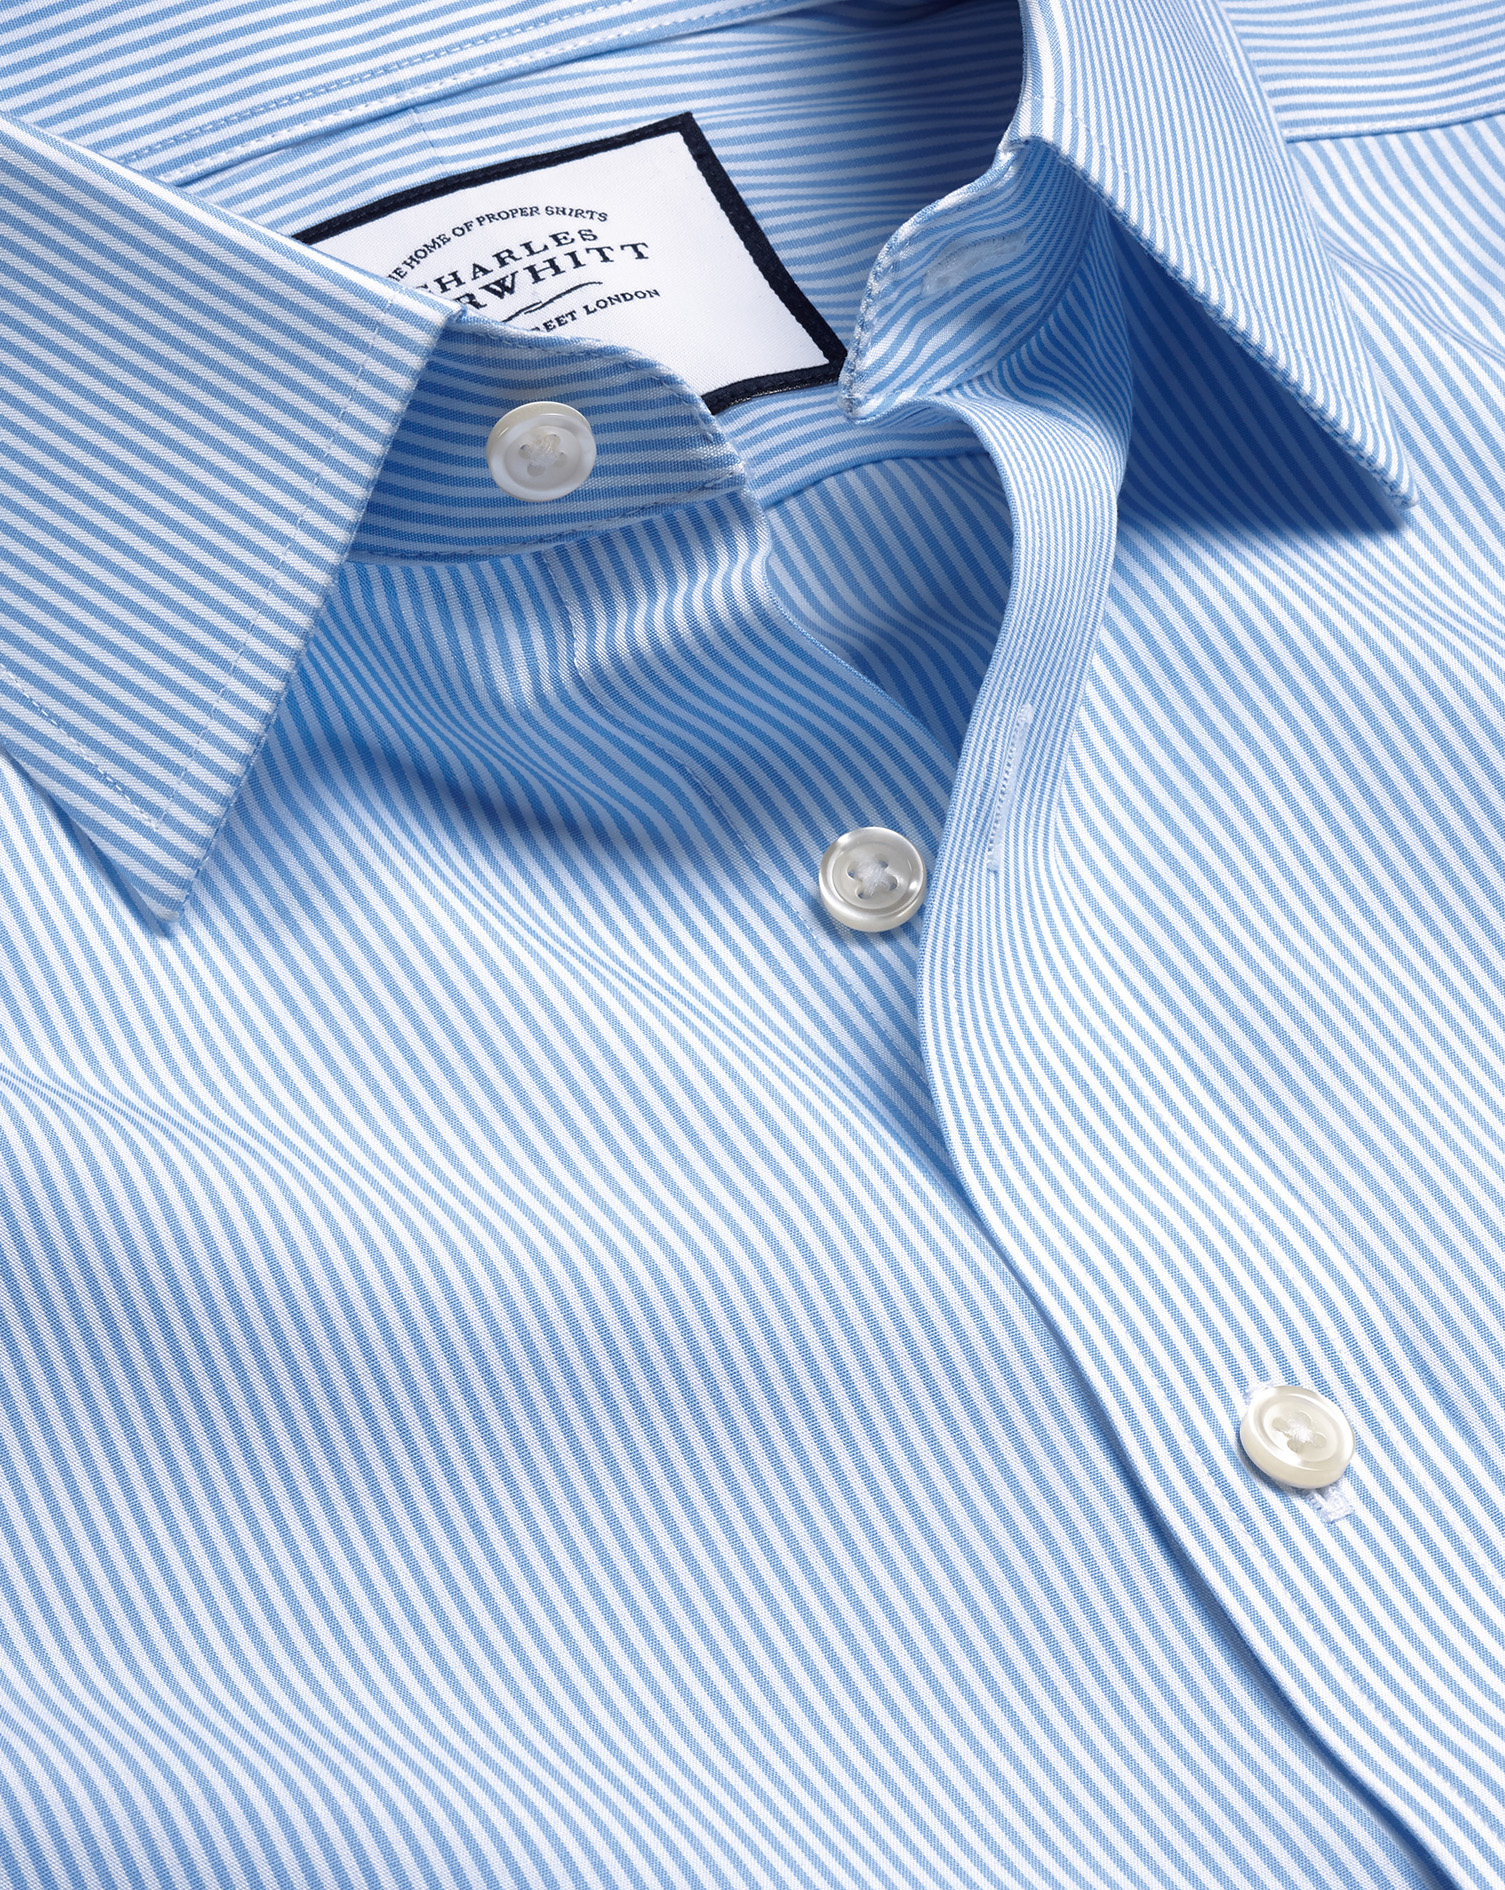 Non-Iron Bengal Stripe Cotton Dress Shirt - Cornflower Blue Single Cuff Size Large
